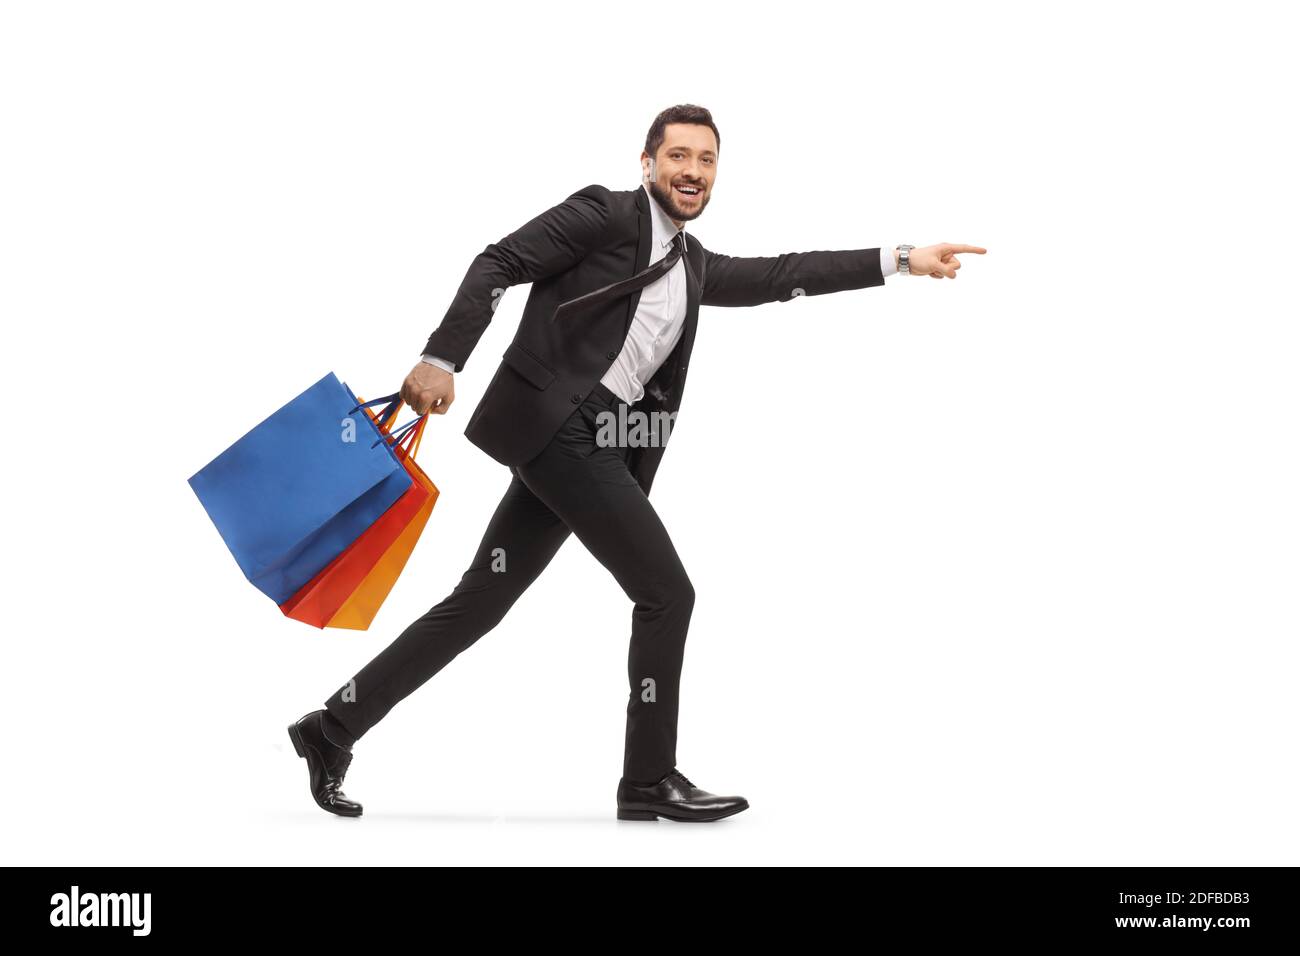 Mann in einem schwarzen Anzug läuft mit Einkaufstaschen und Zeigt isoliert auf weißem Hintergrund Stockfoto